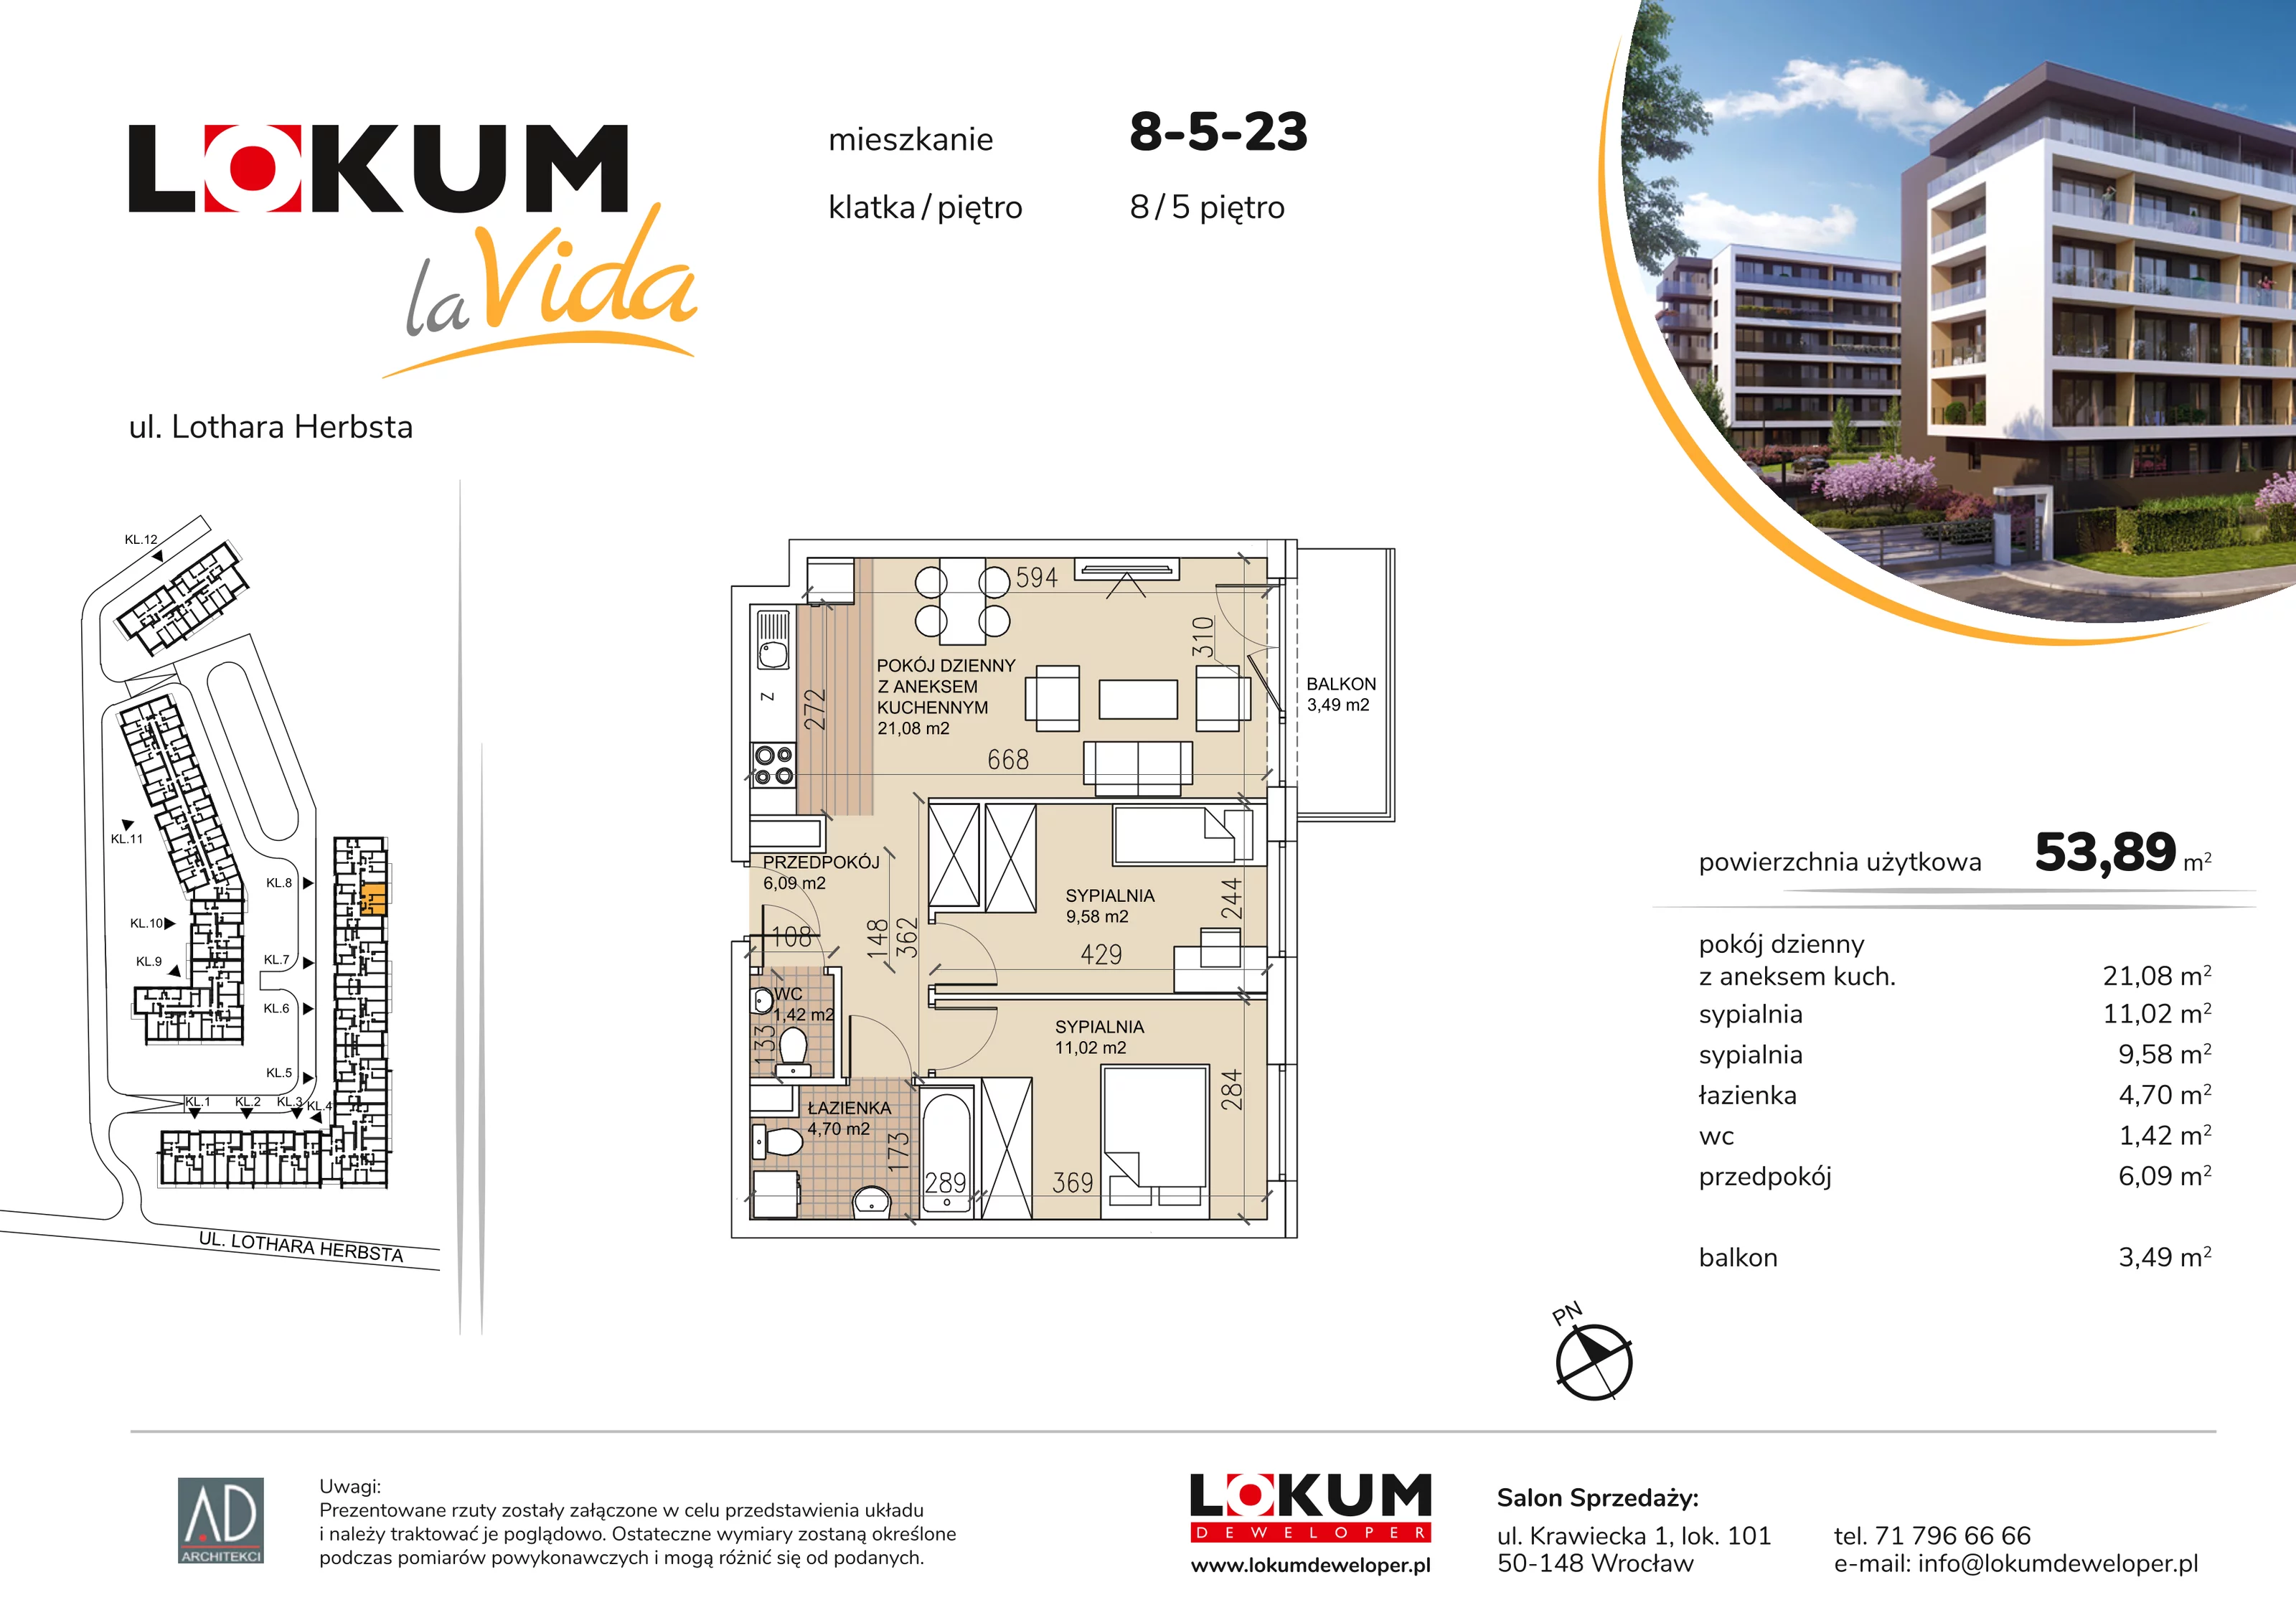 Mieszkanie 53,89 m², piętro 5, oferta nr 8-5-23, Lokum la Vida, Wrocław, Sołtysowice, ul. Lothara Herbsta